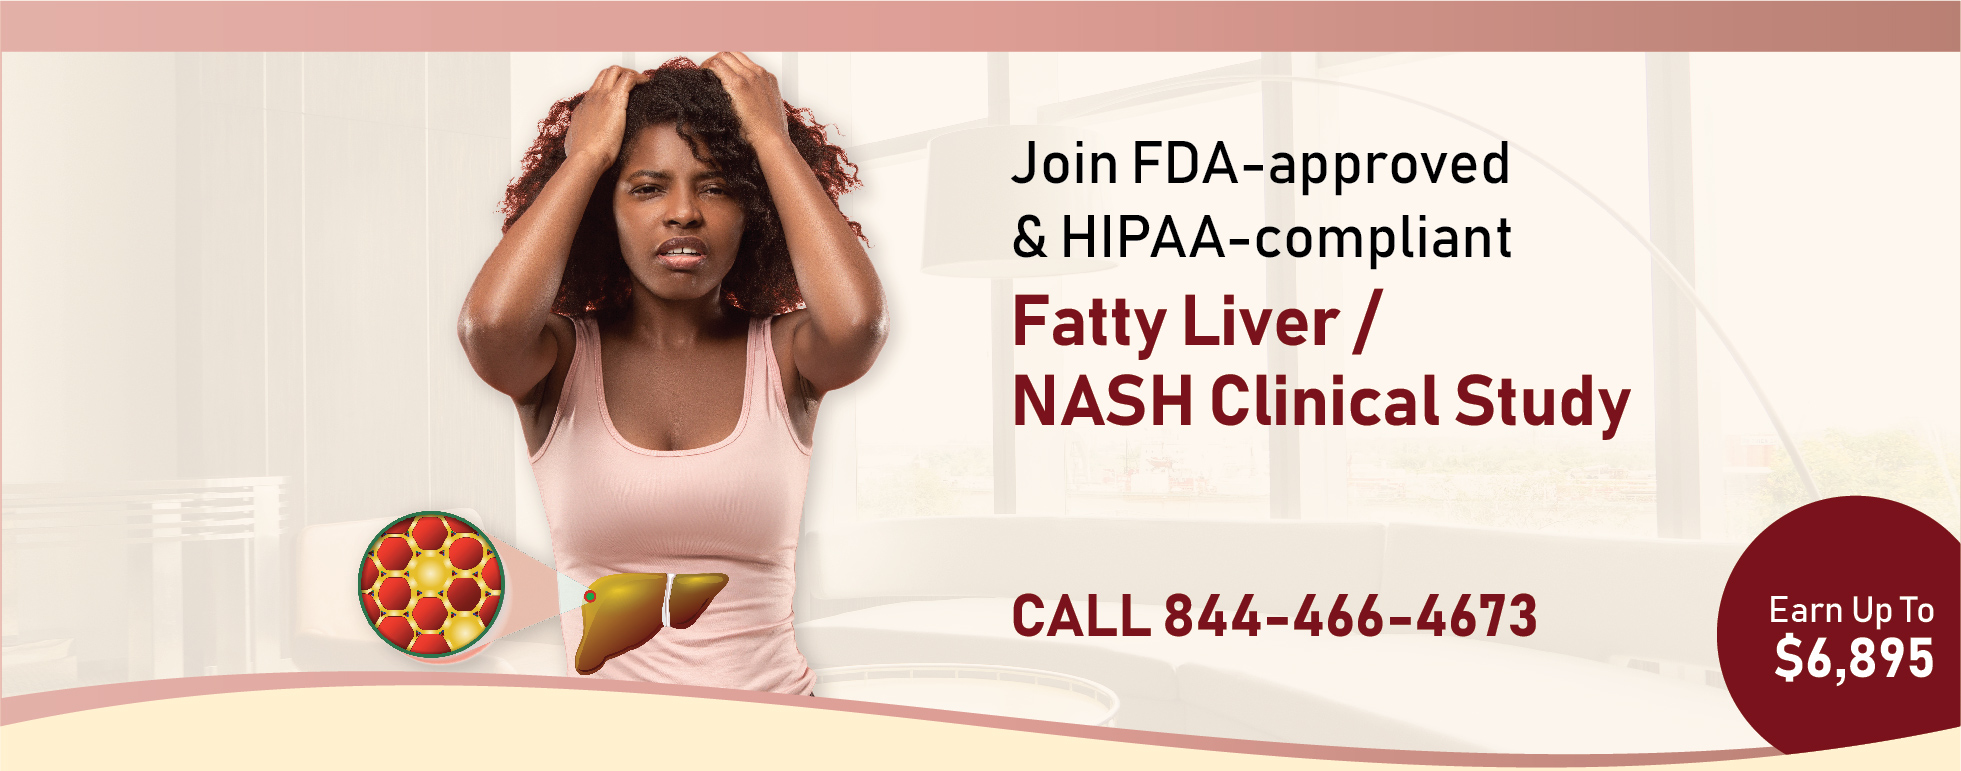 Hope Fatty Liver / NASH Study